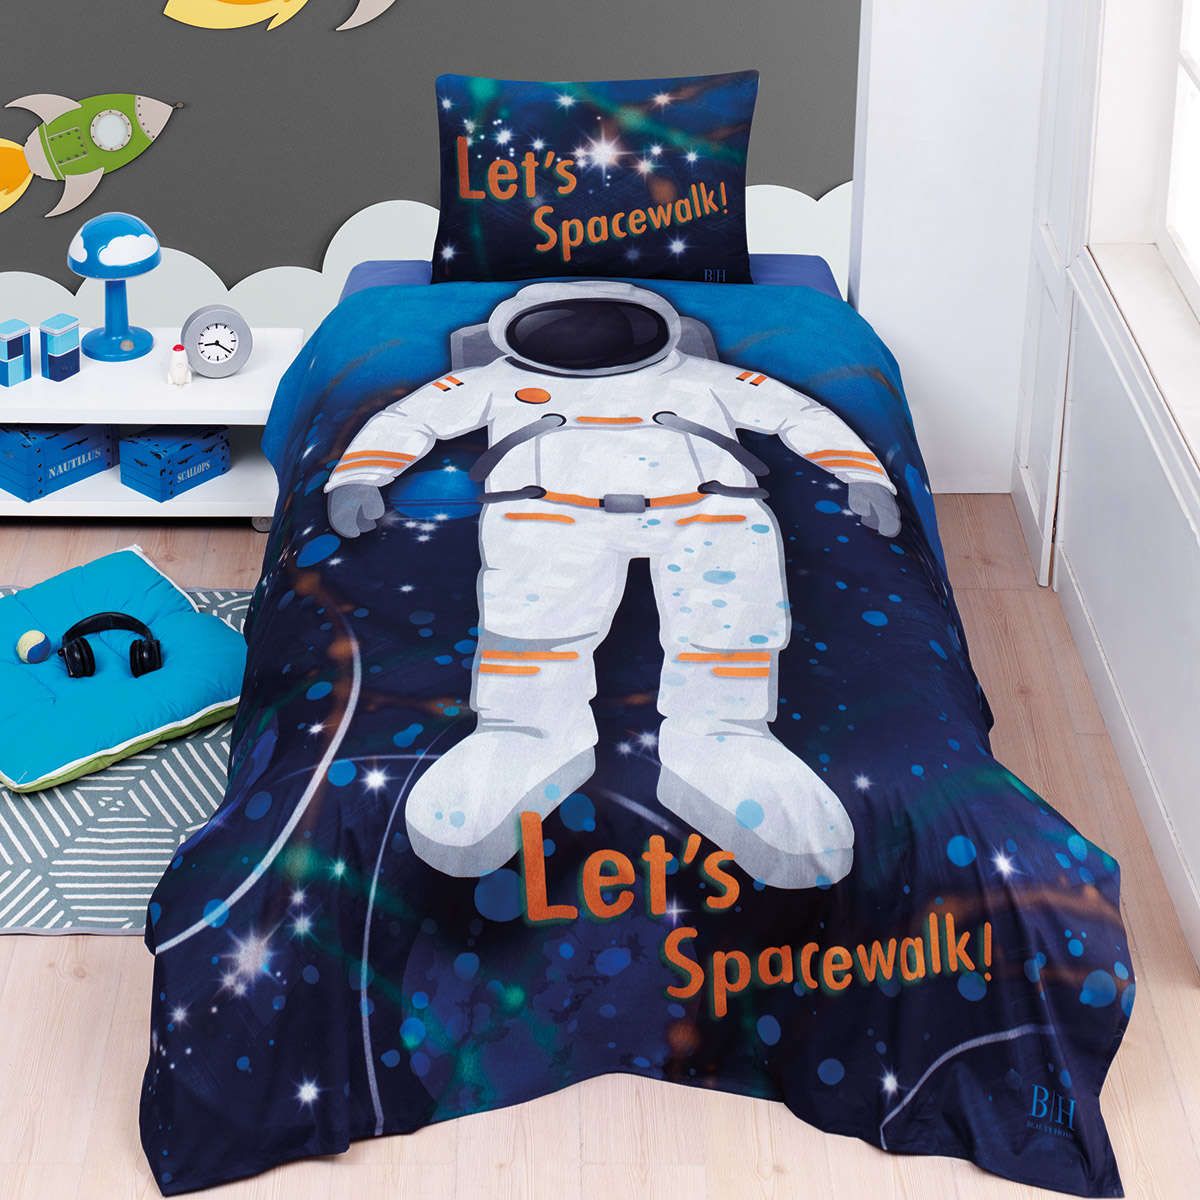 Παιδική παπλωματοθήκη μονή σετ Spacewalk Art 6227 beauty home